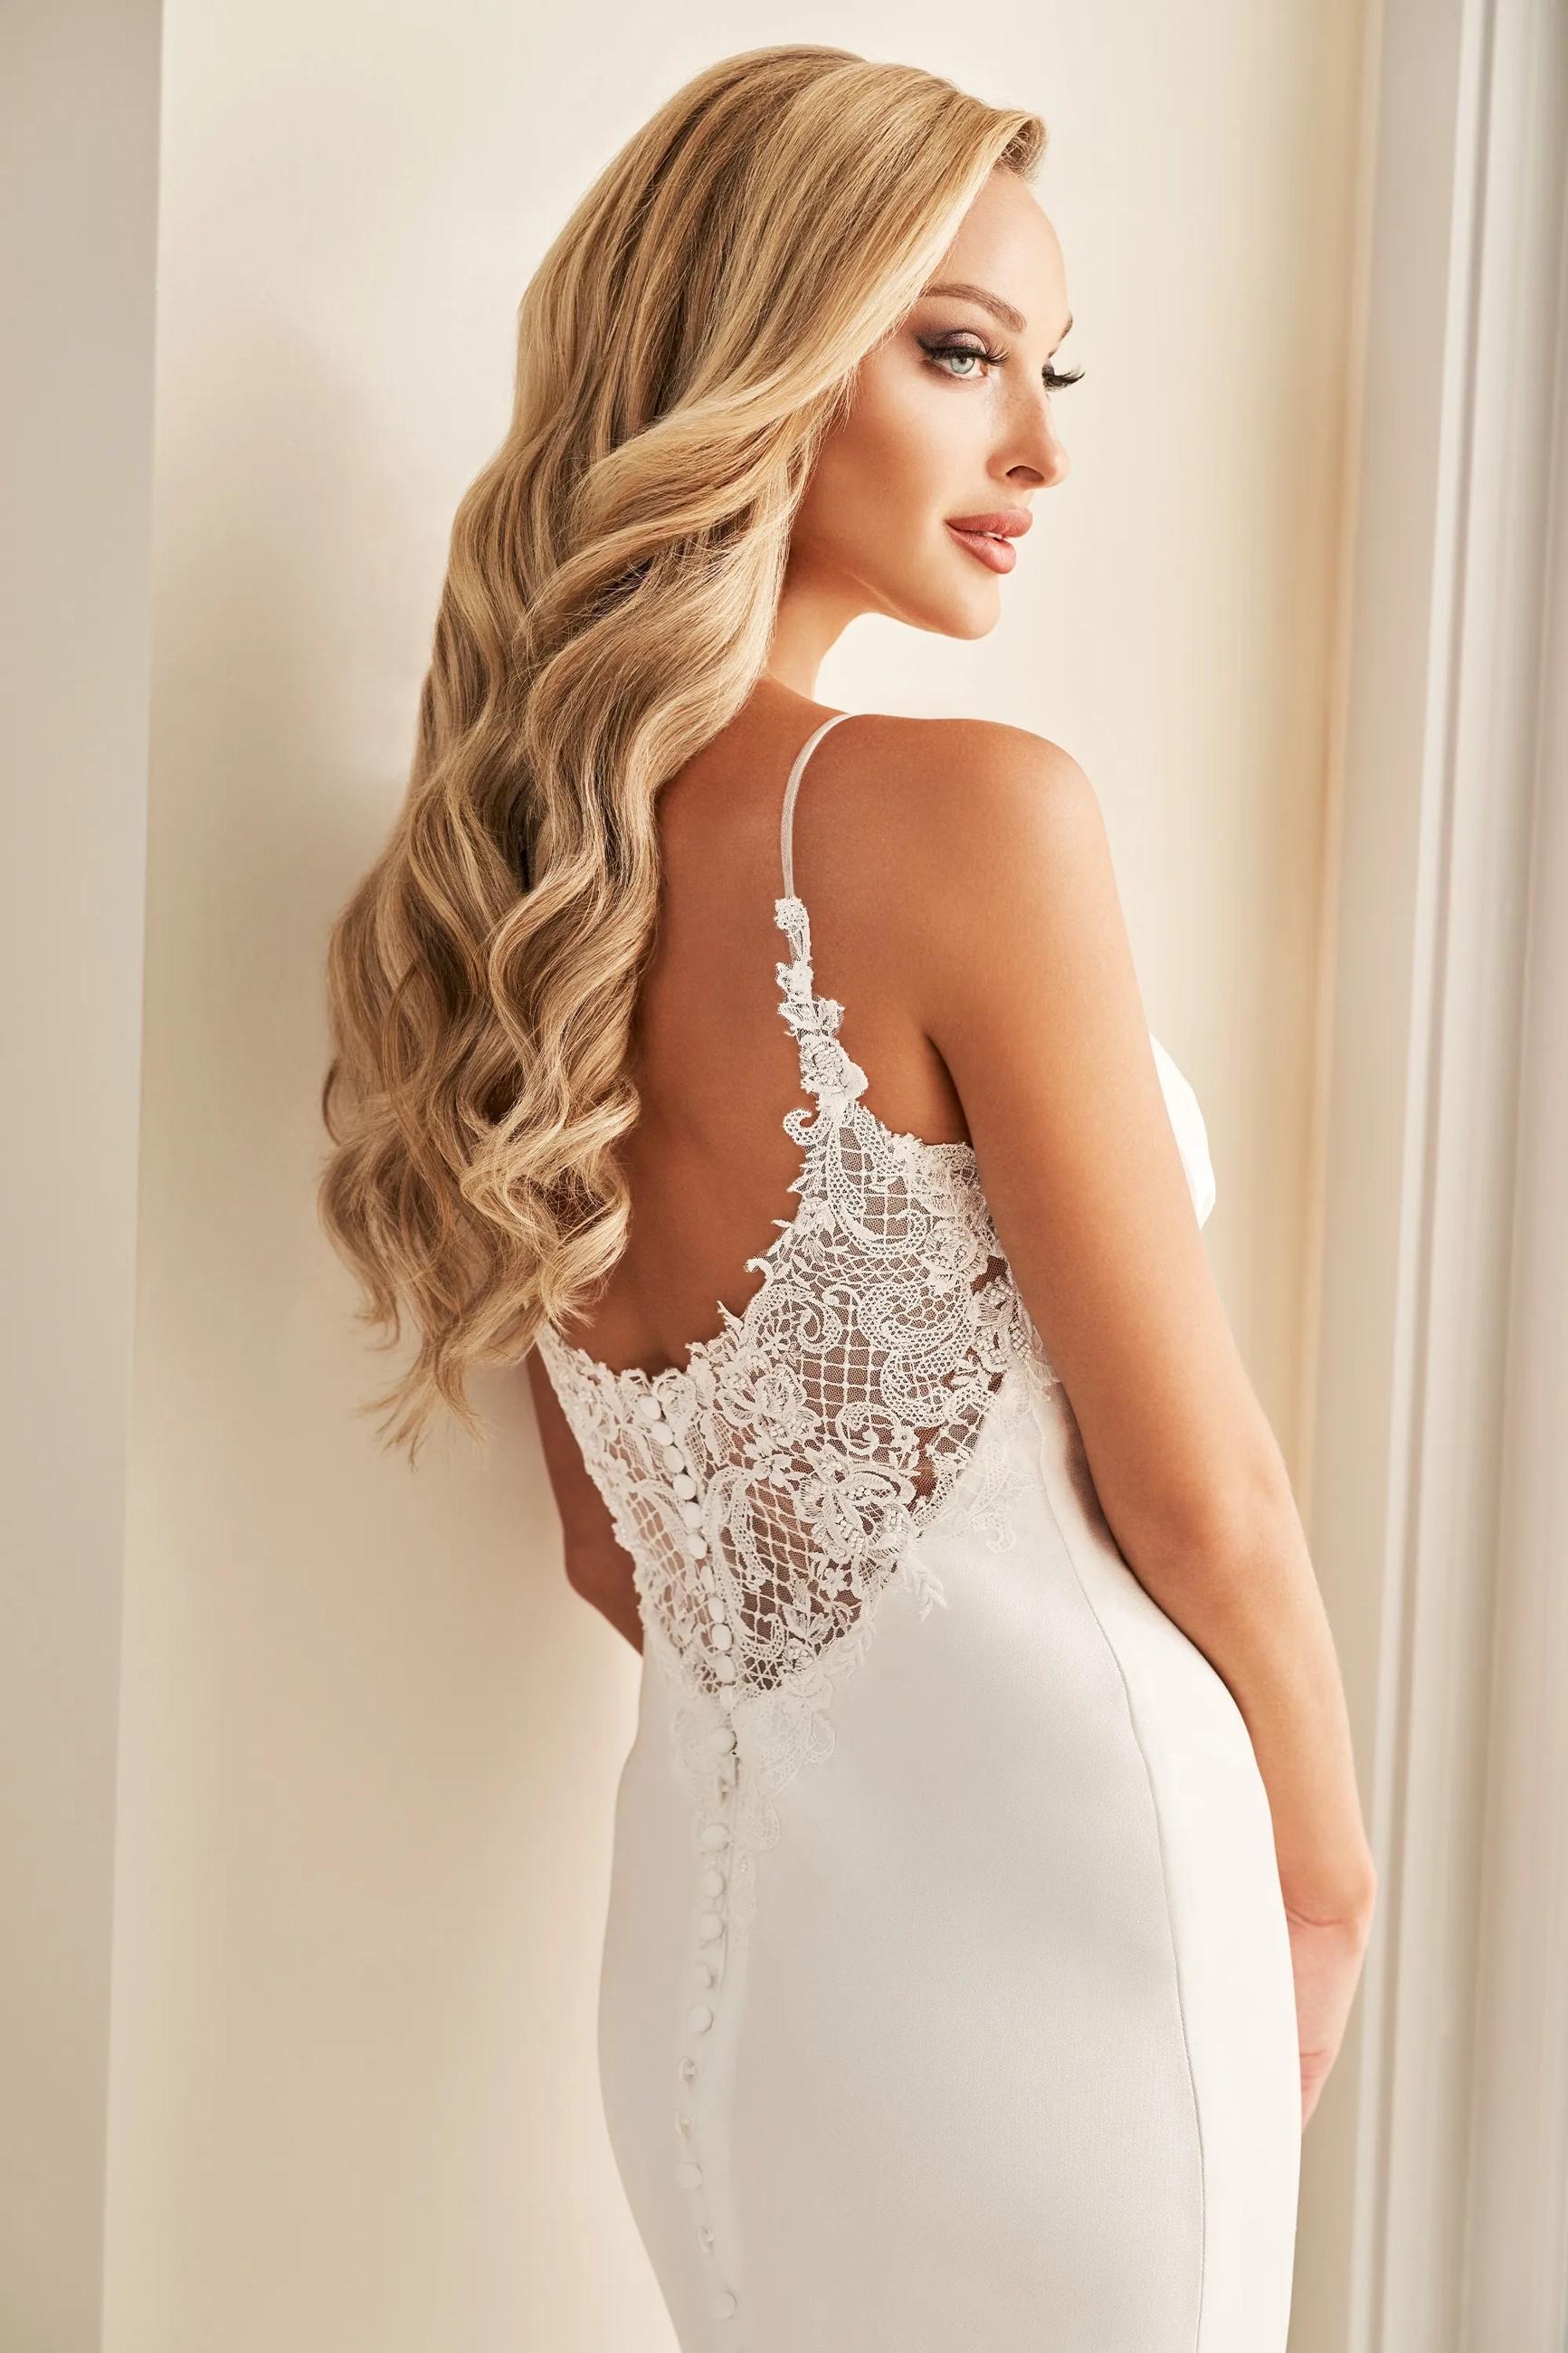 Model wearing a Flattering Back Style gown. Desktop image